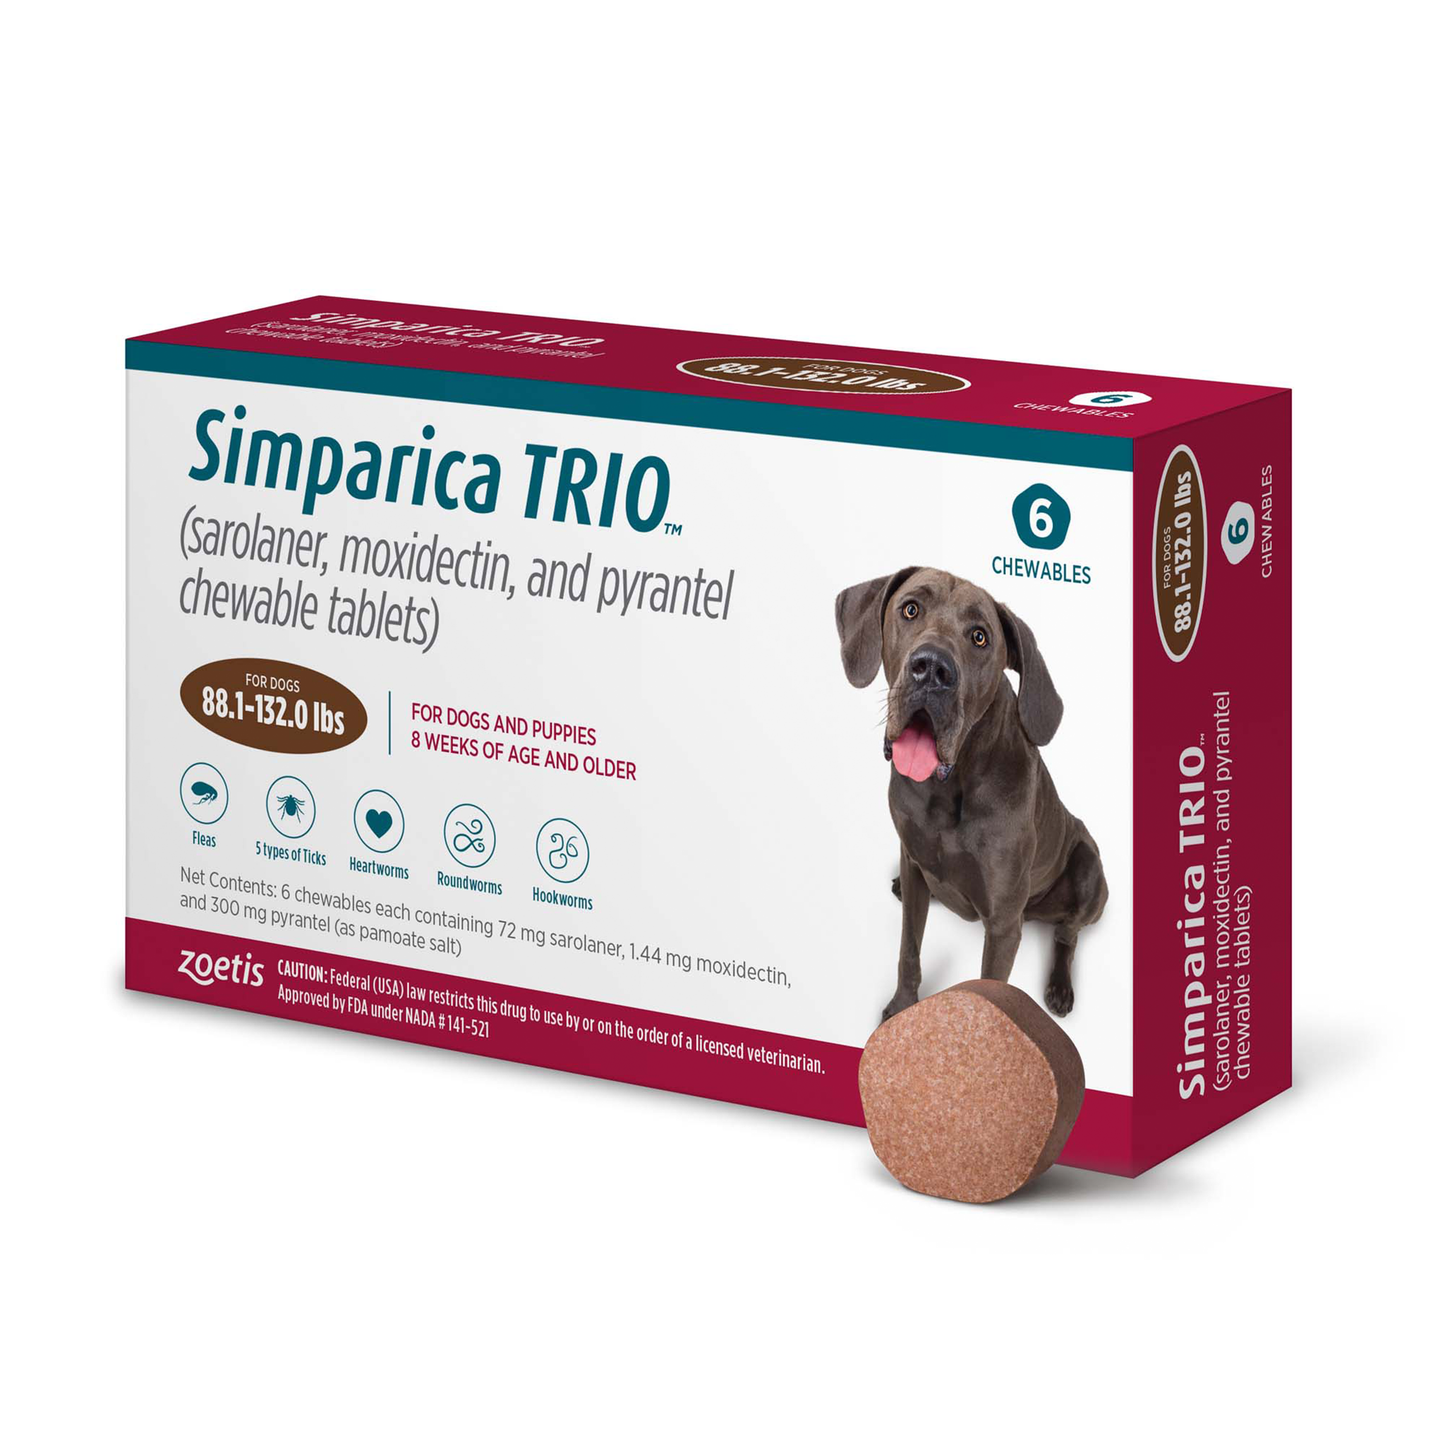 Simparica Trio 88.1-132.0lbs (6pk)